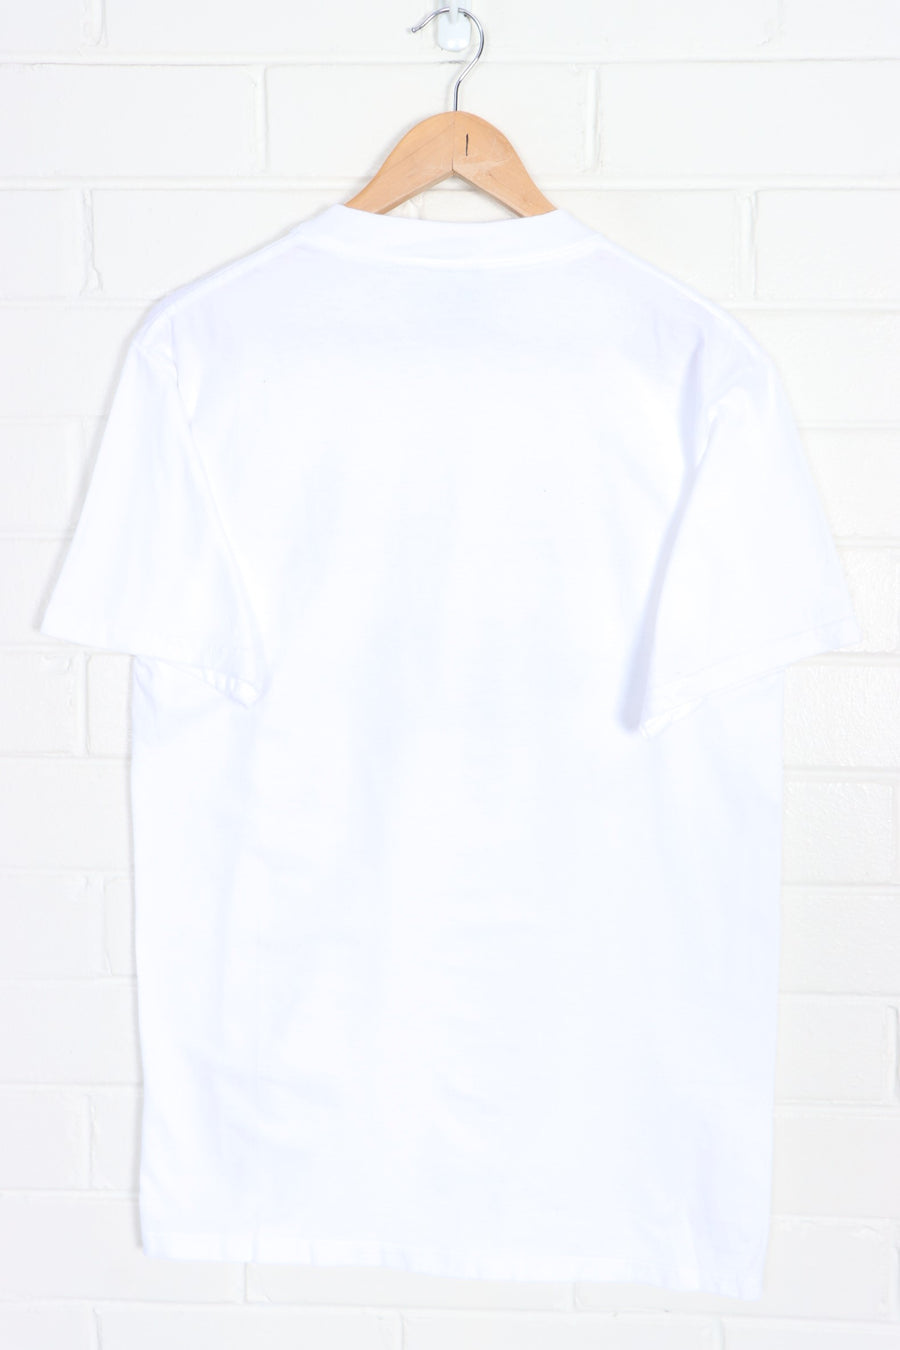 Lake Tahoe White Single Stitch T-Shirt (S)